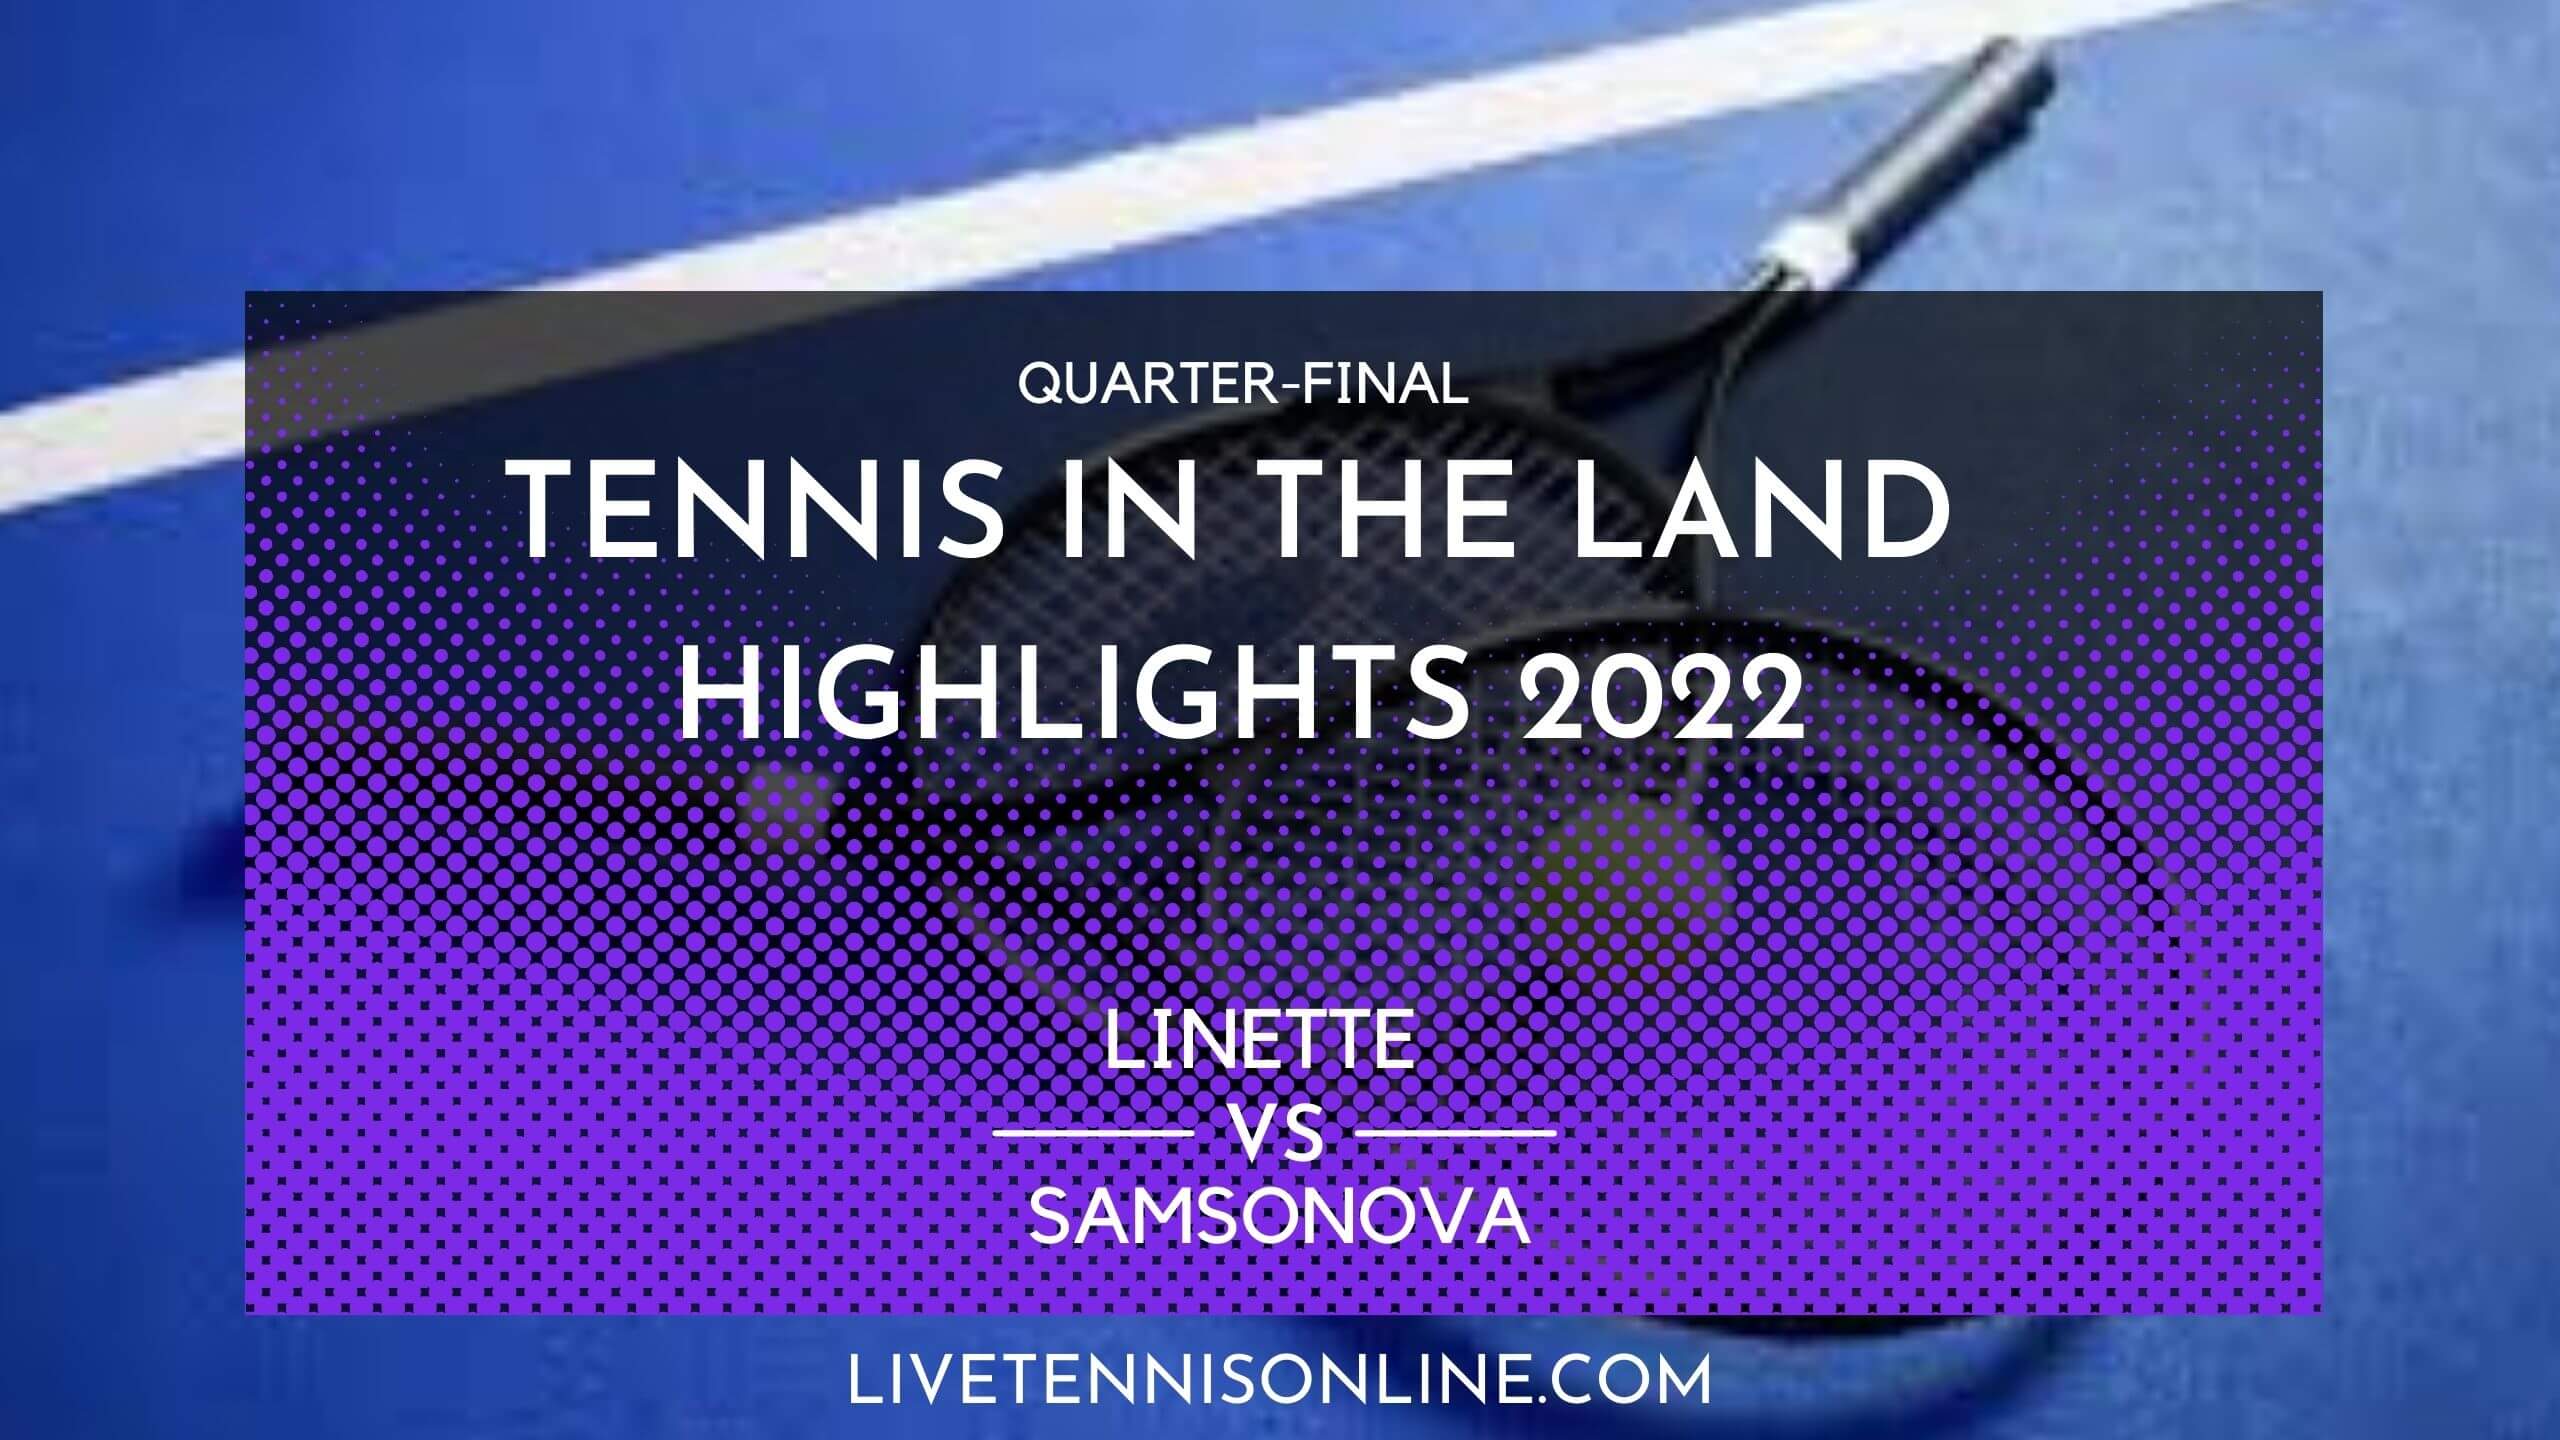 Linette Vs Samsonova QF Highlights 2022 Tennis In The Land